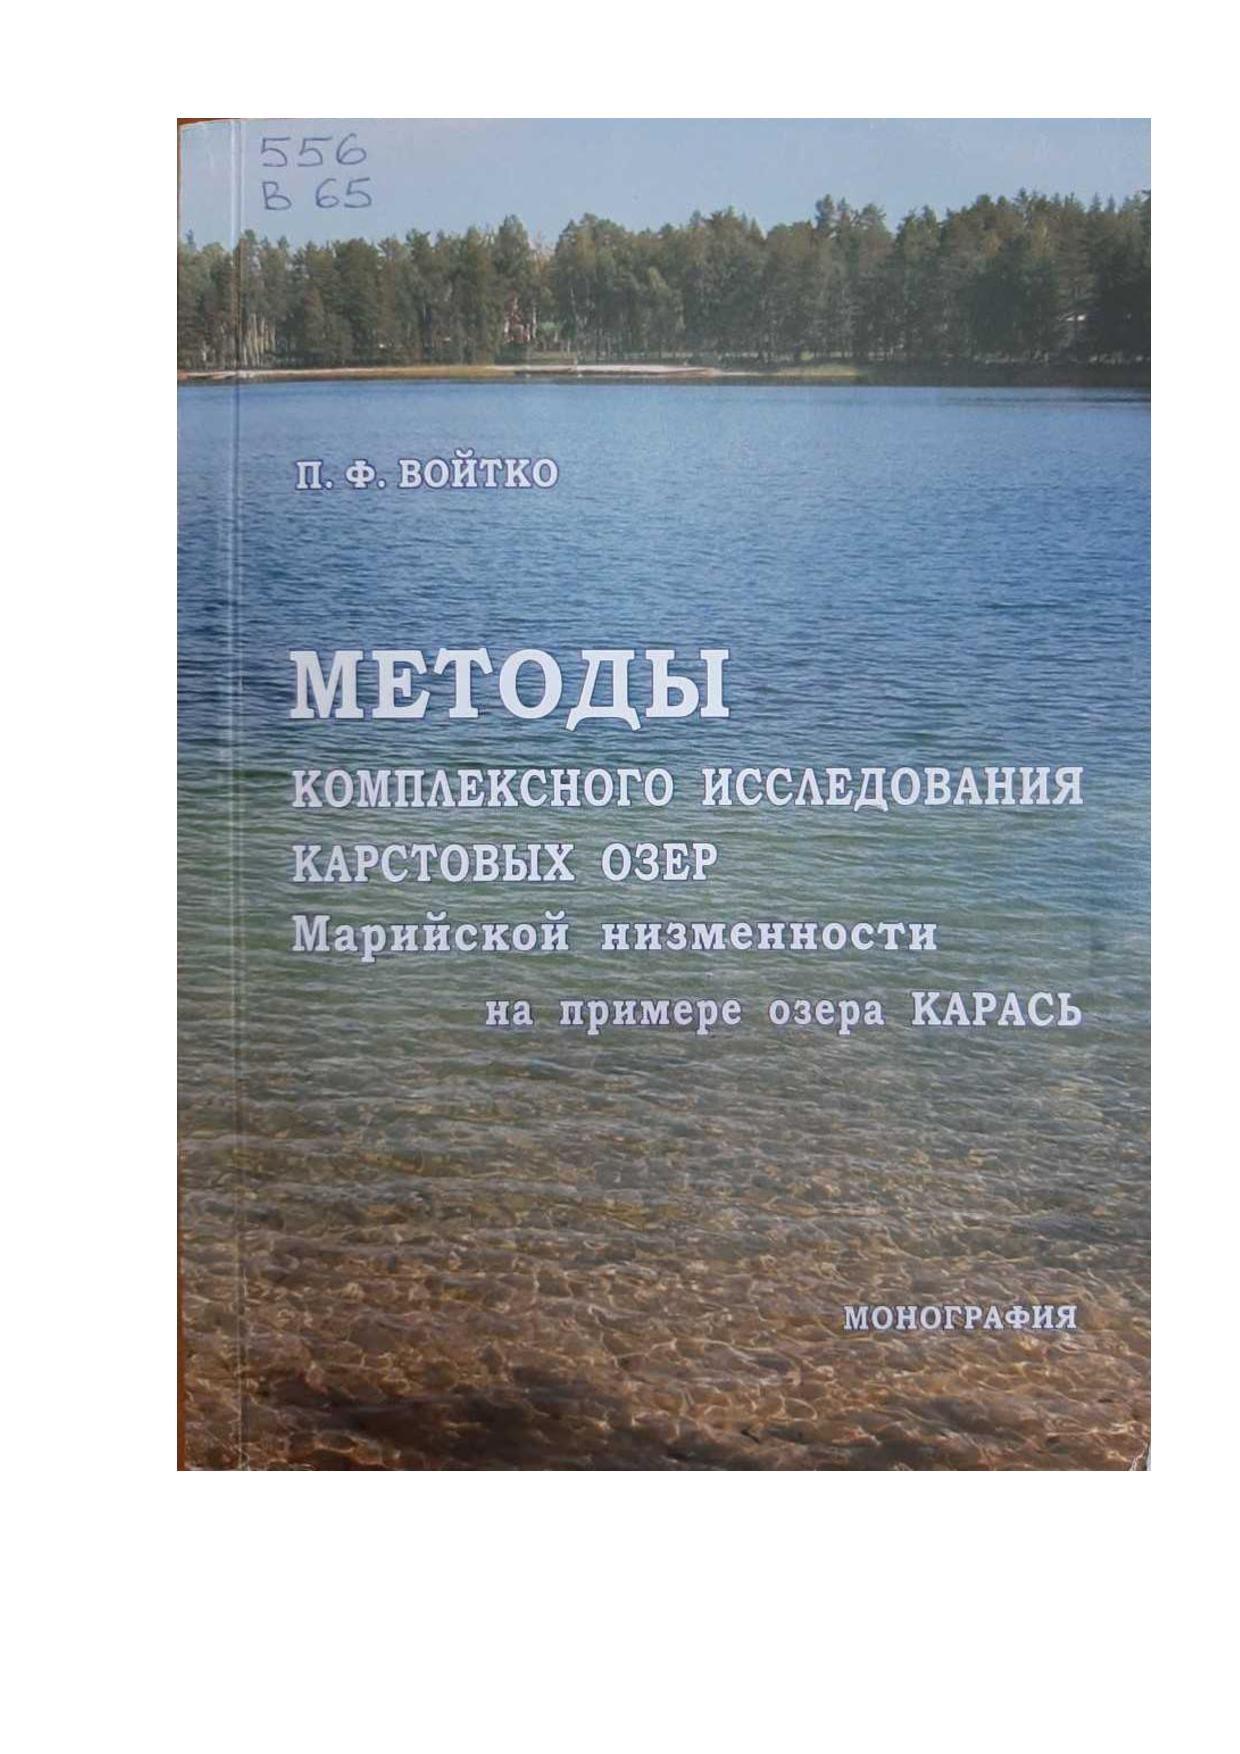 Методы комплексного исследования карстовых озер Марийской низменности на примере озера Карась